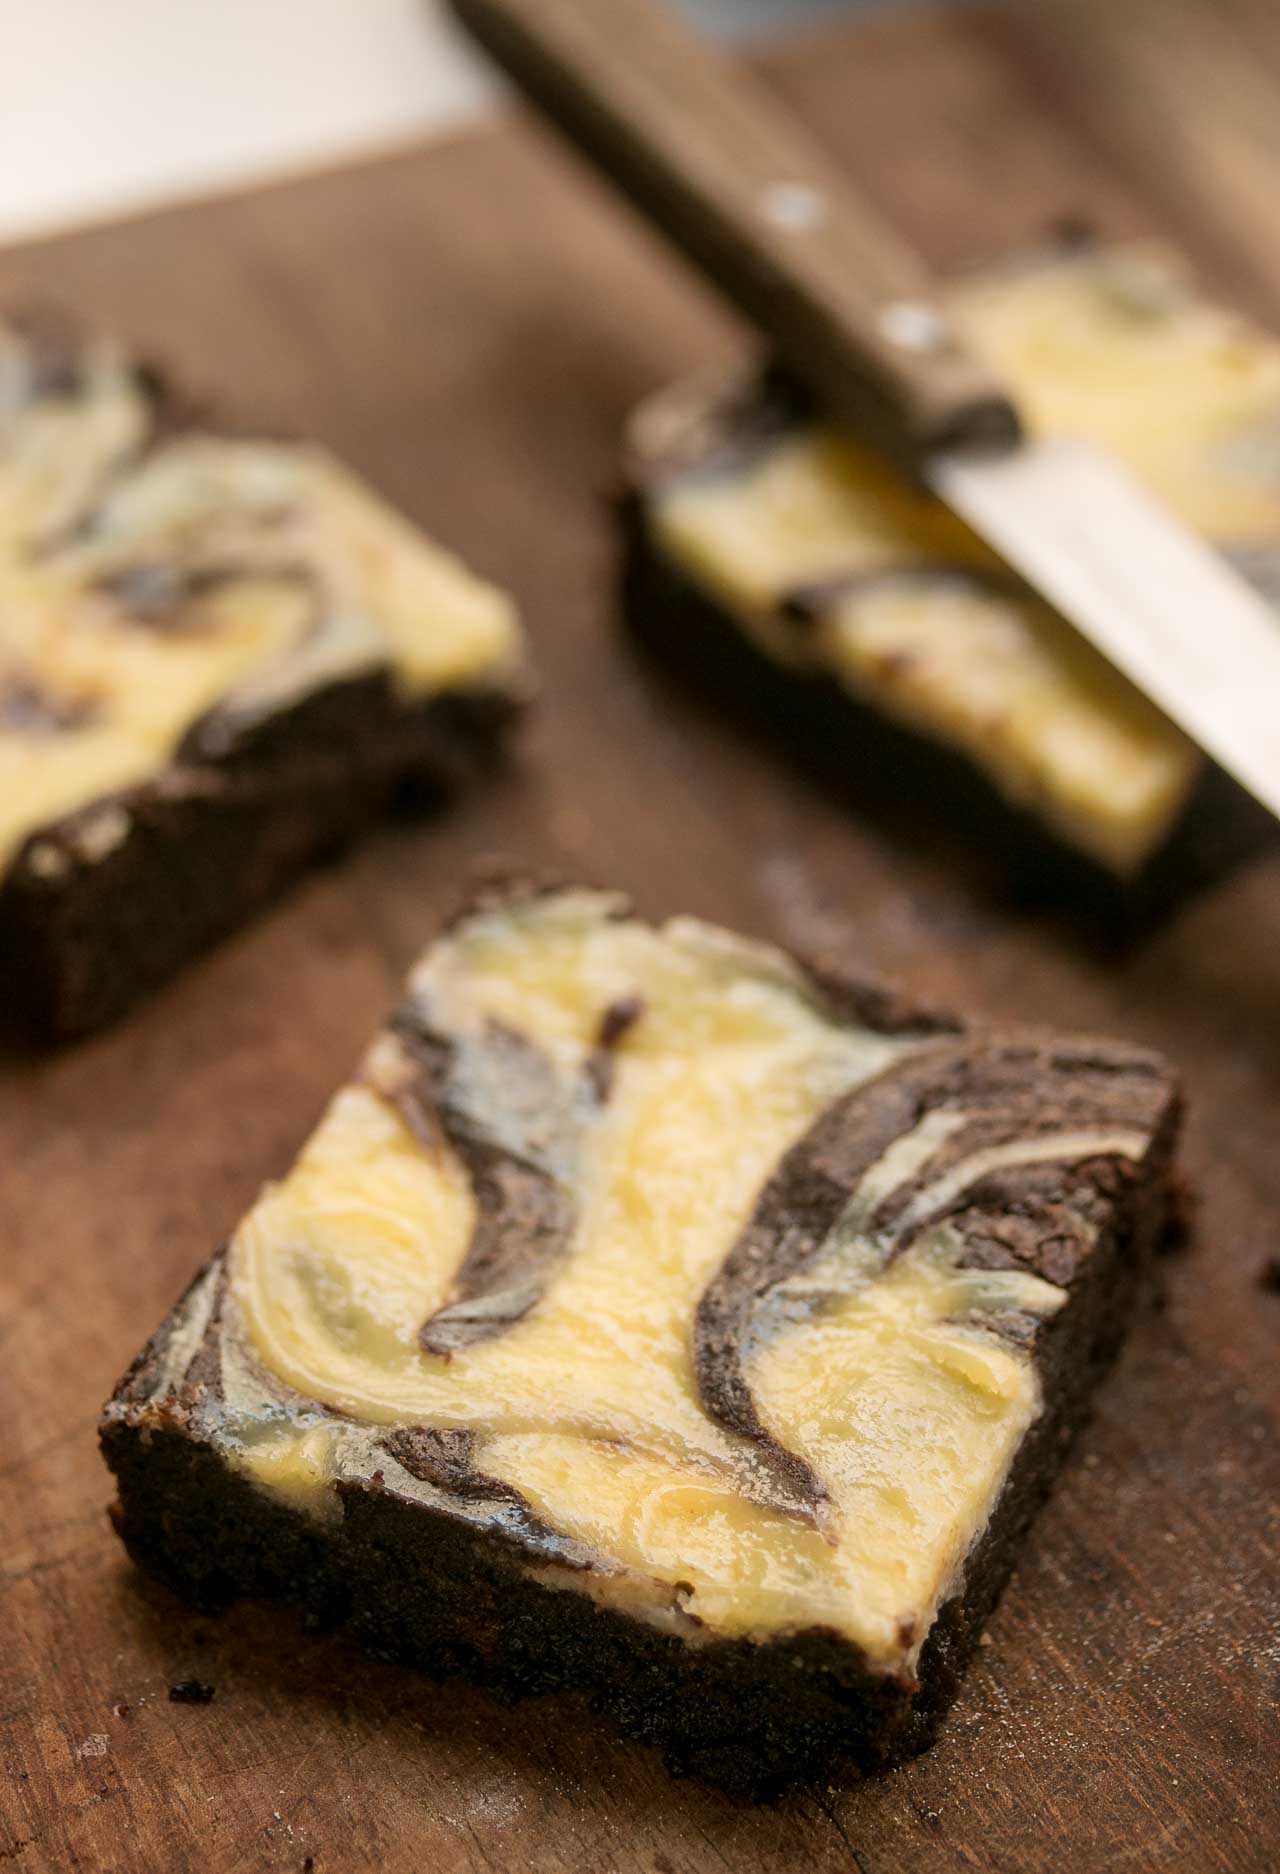 https://www.davidlebovitz.com/wp-content/uploads/2008/10/Cheesecake-chocolate-brownie-recipe-4.jpg